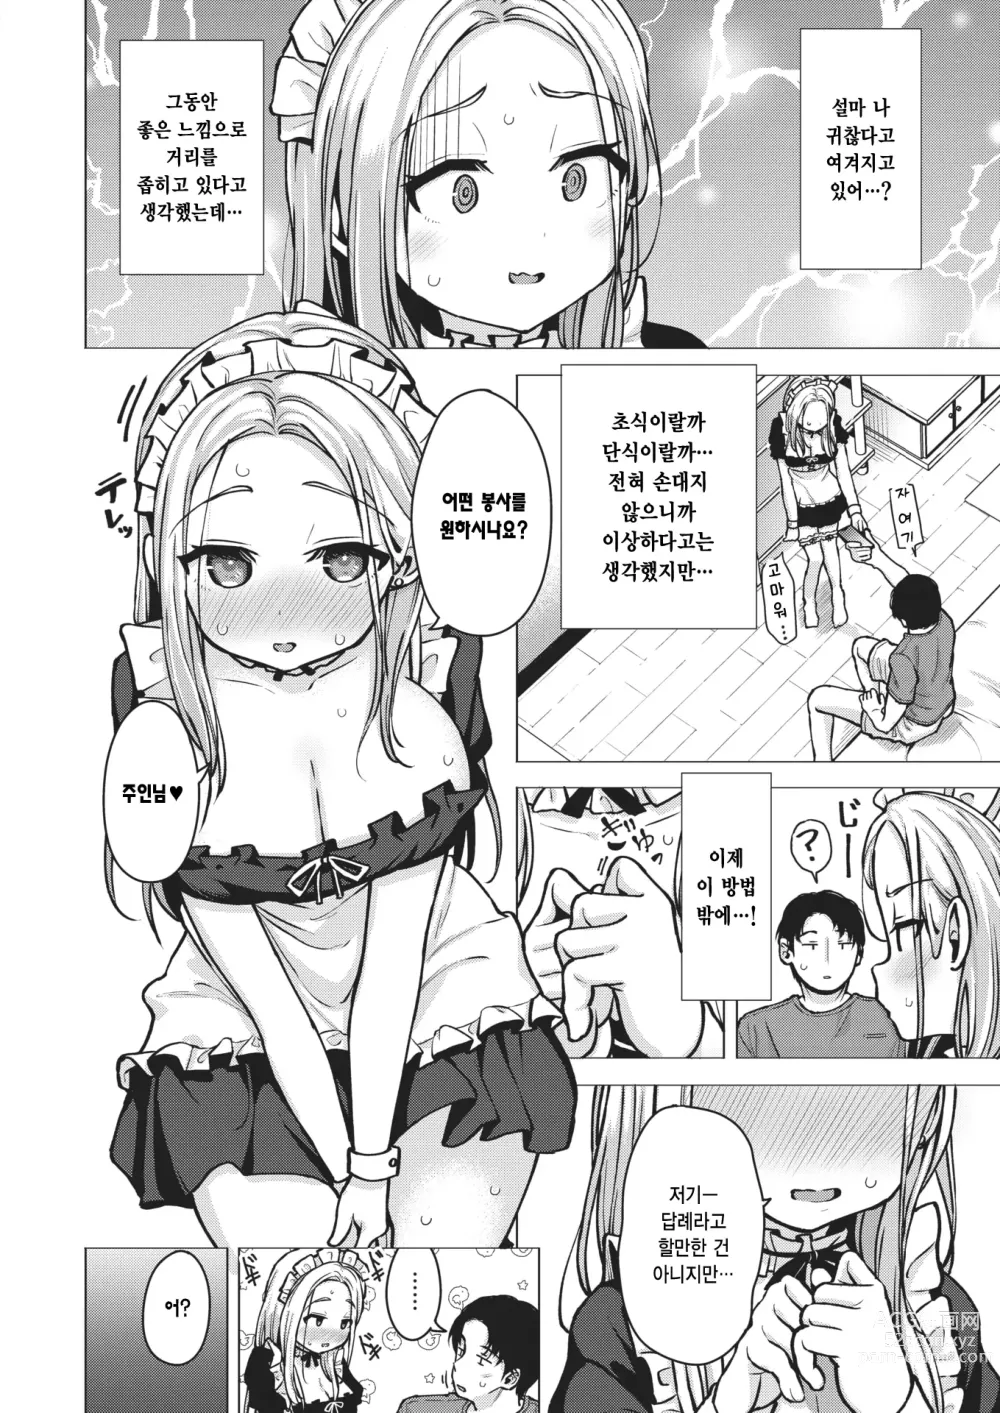 Page 6 of manga 하나의 계기